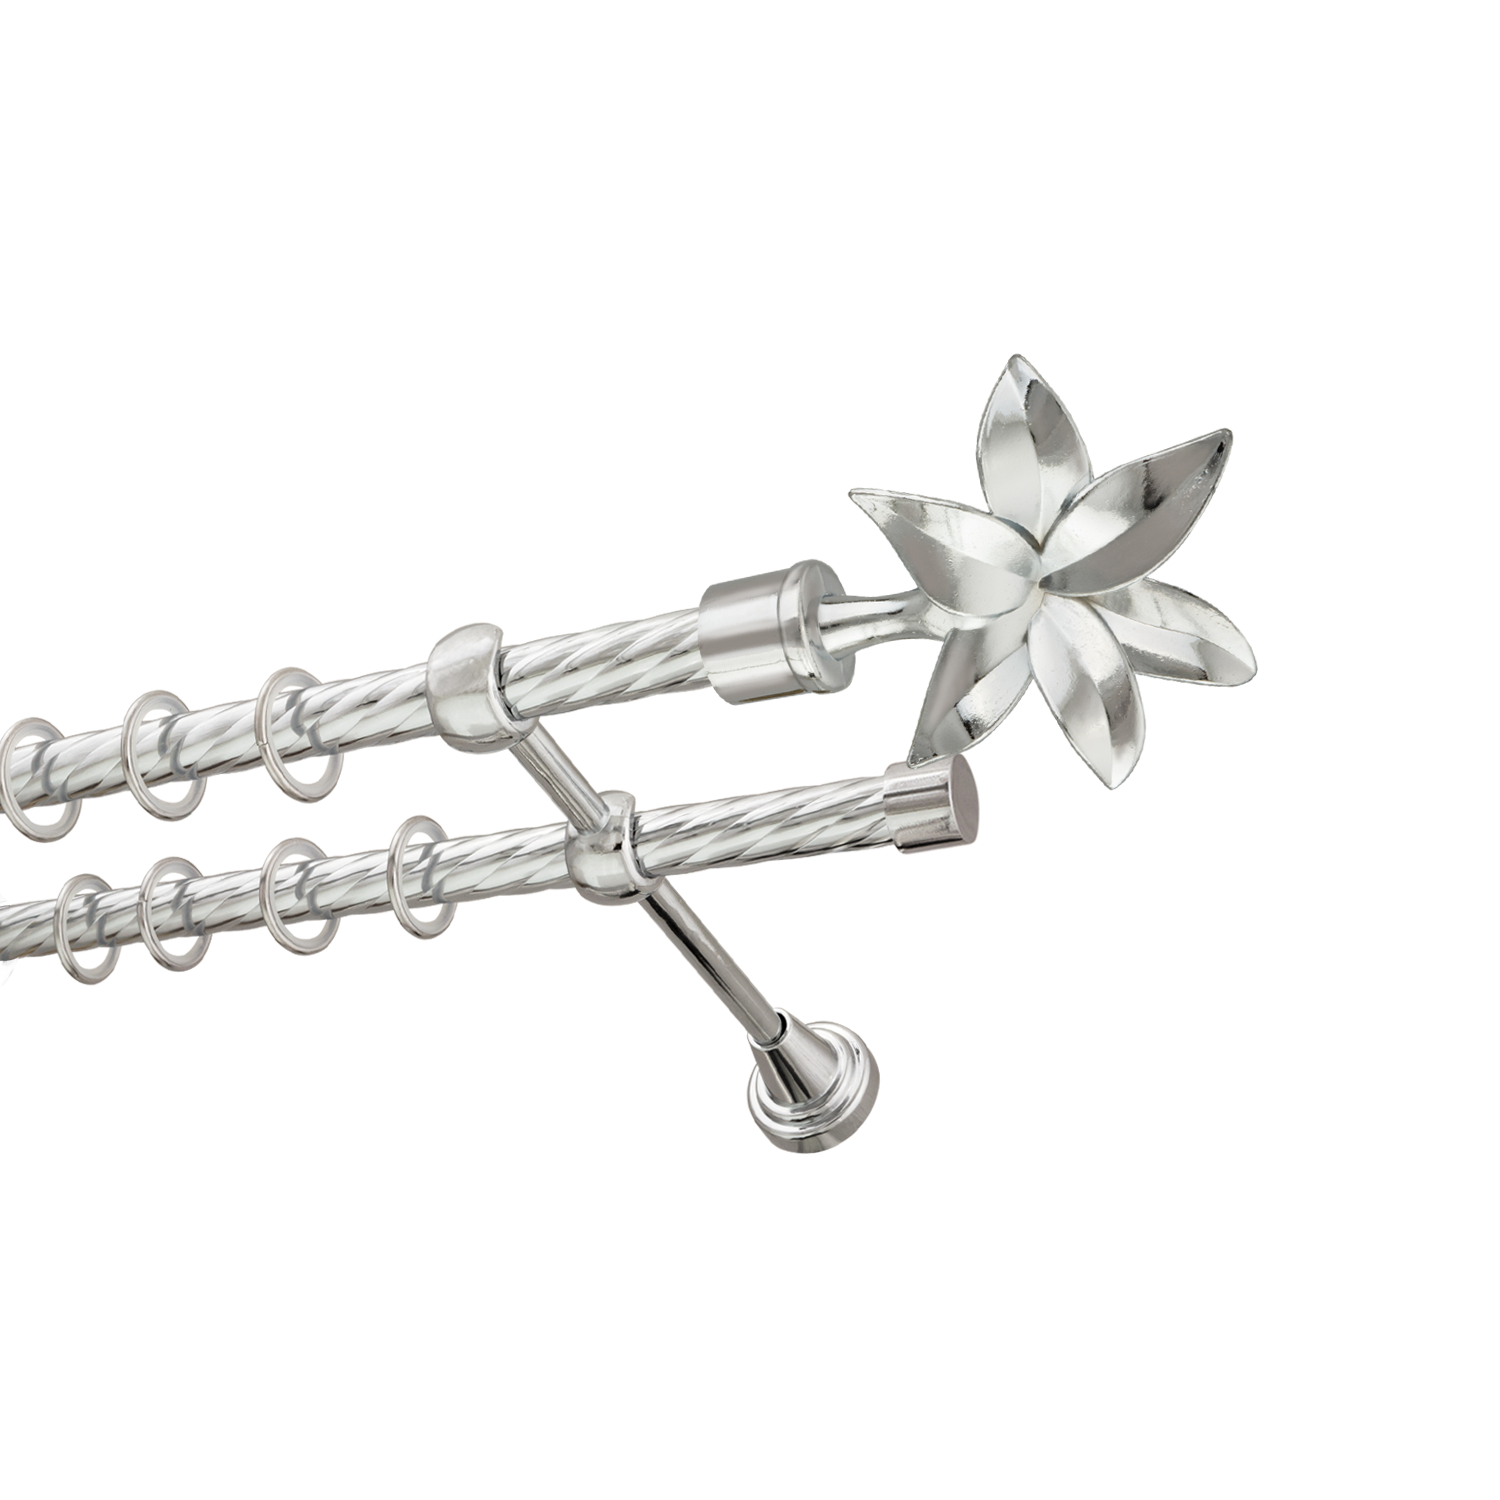 Металлический карниз для штор Магнолия, двухрядный 16/16 мм, серебро, витая штанга, длина 180 см - фото Wikidecor.ru